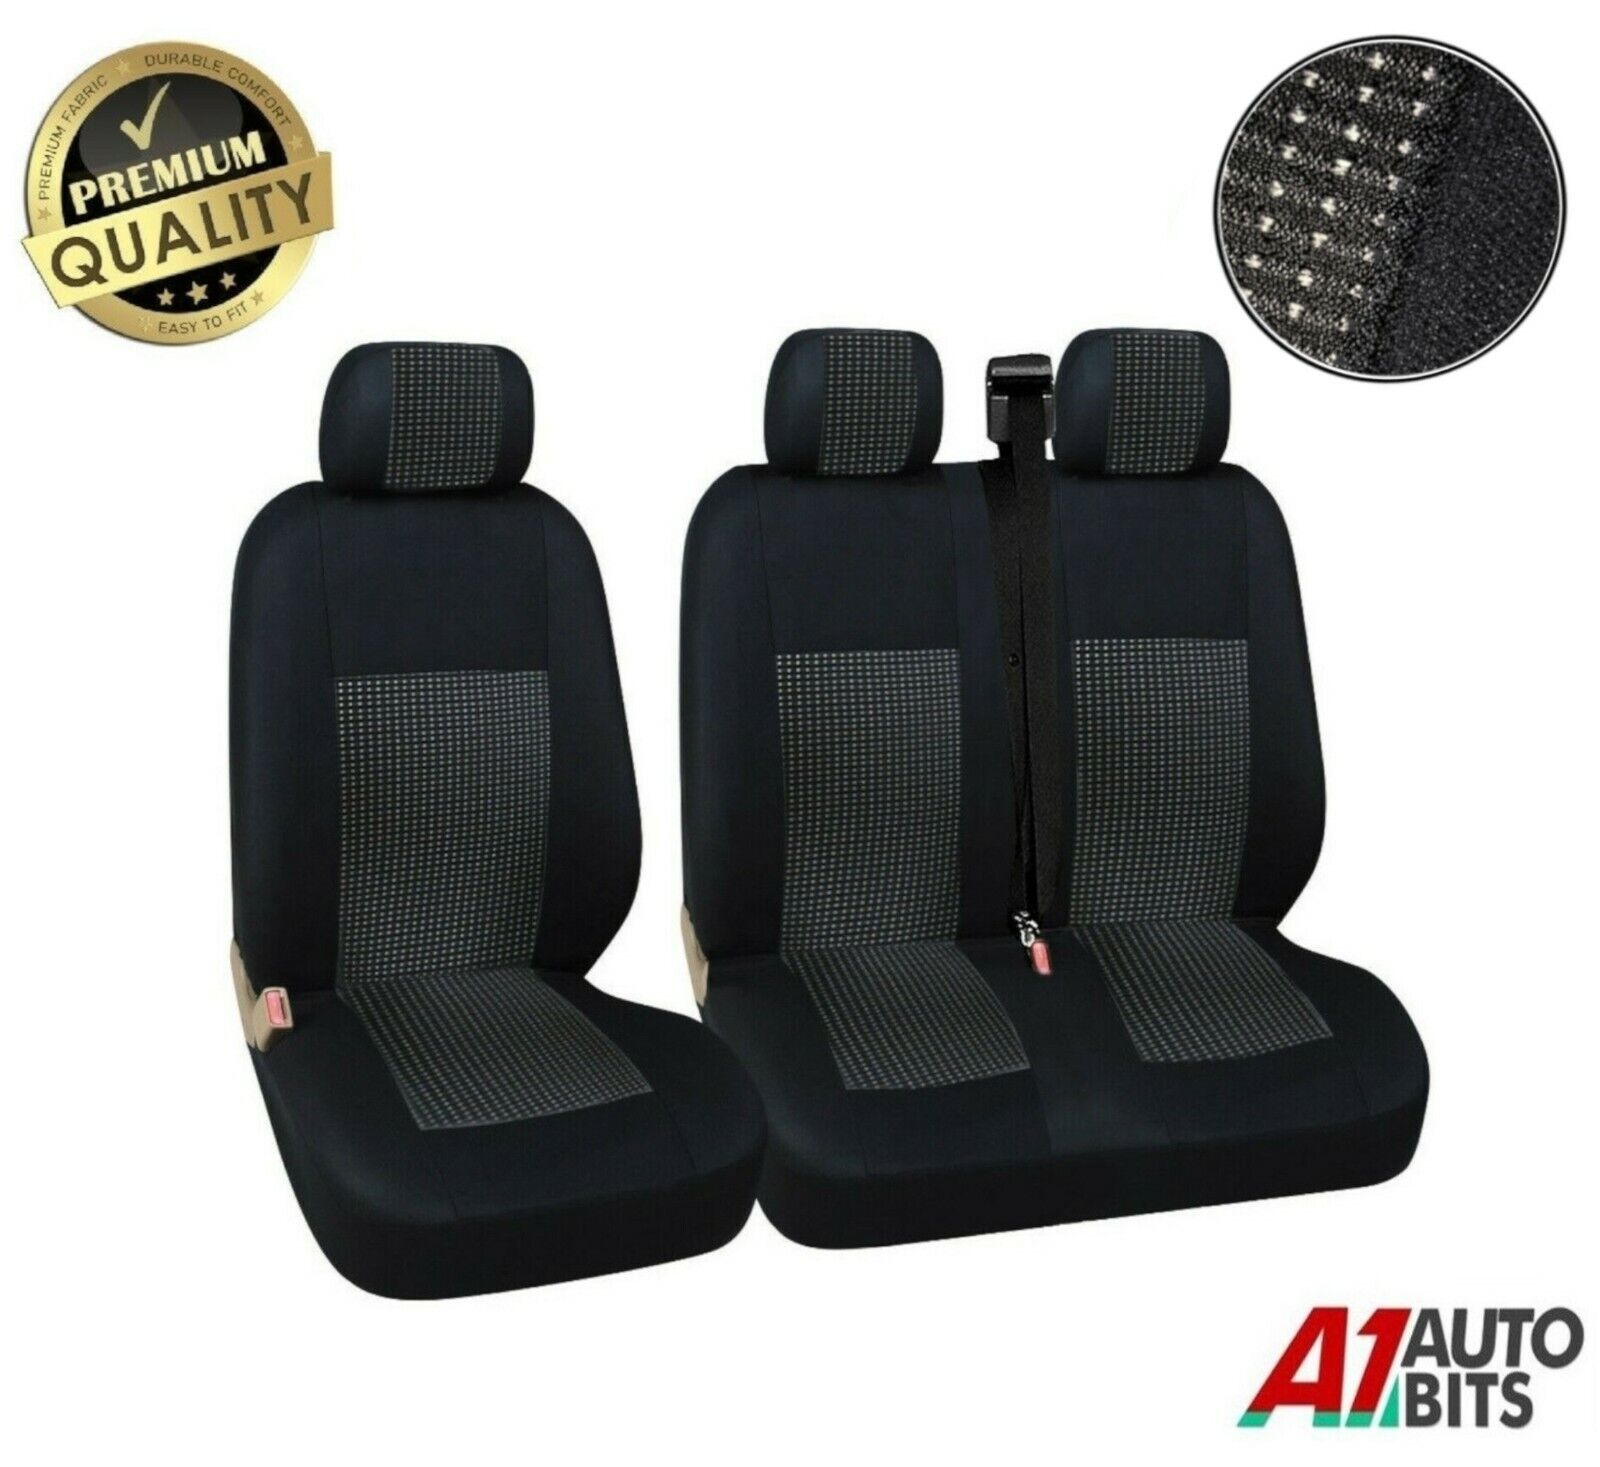 2+1 Black Premium Fabric Seat Covers For Fiat Scudo Ducato New